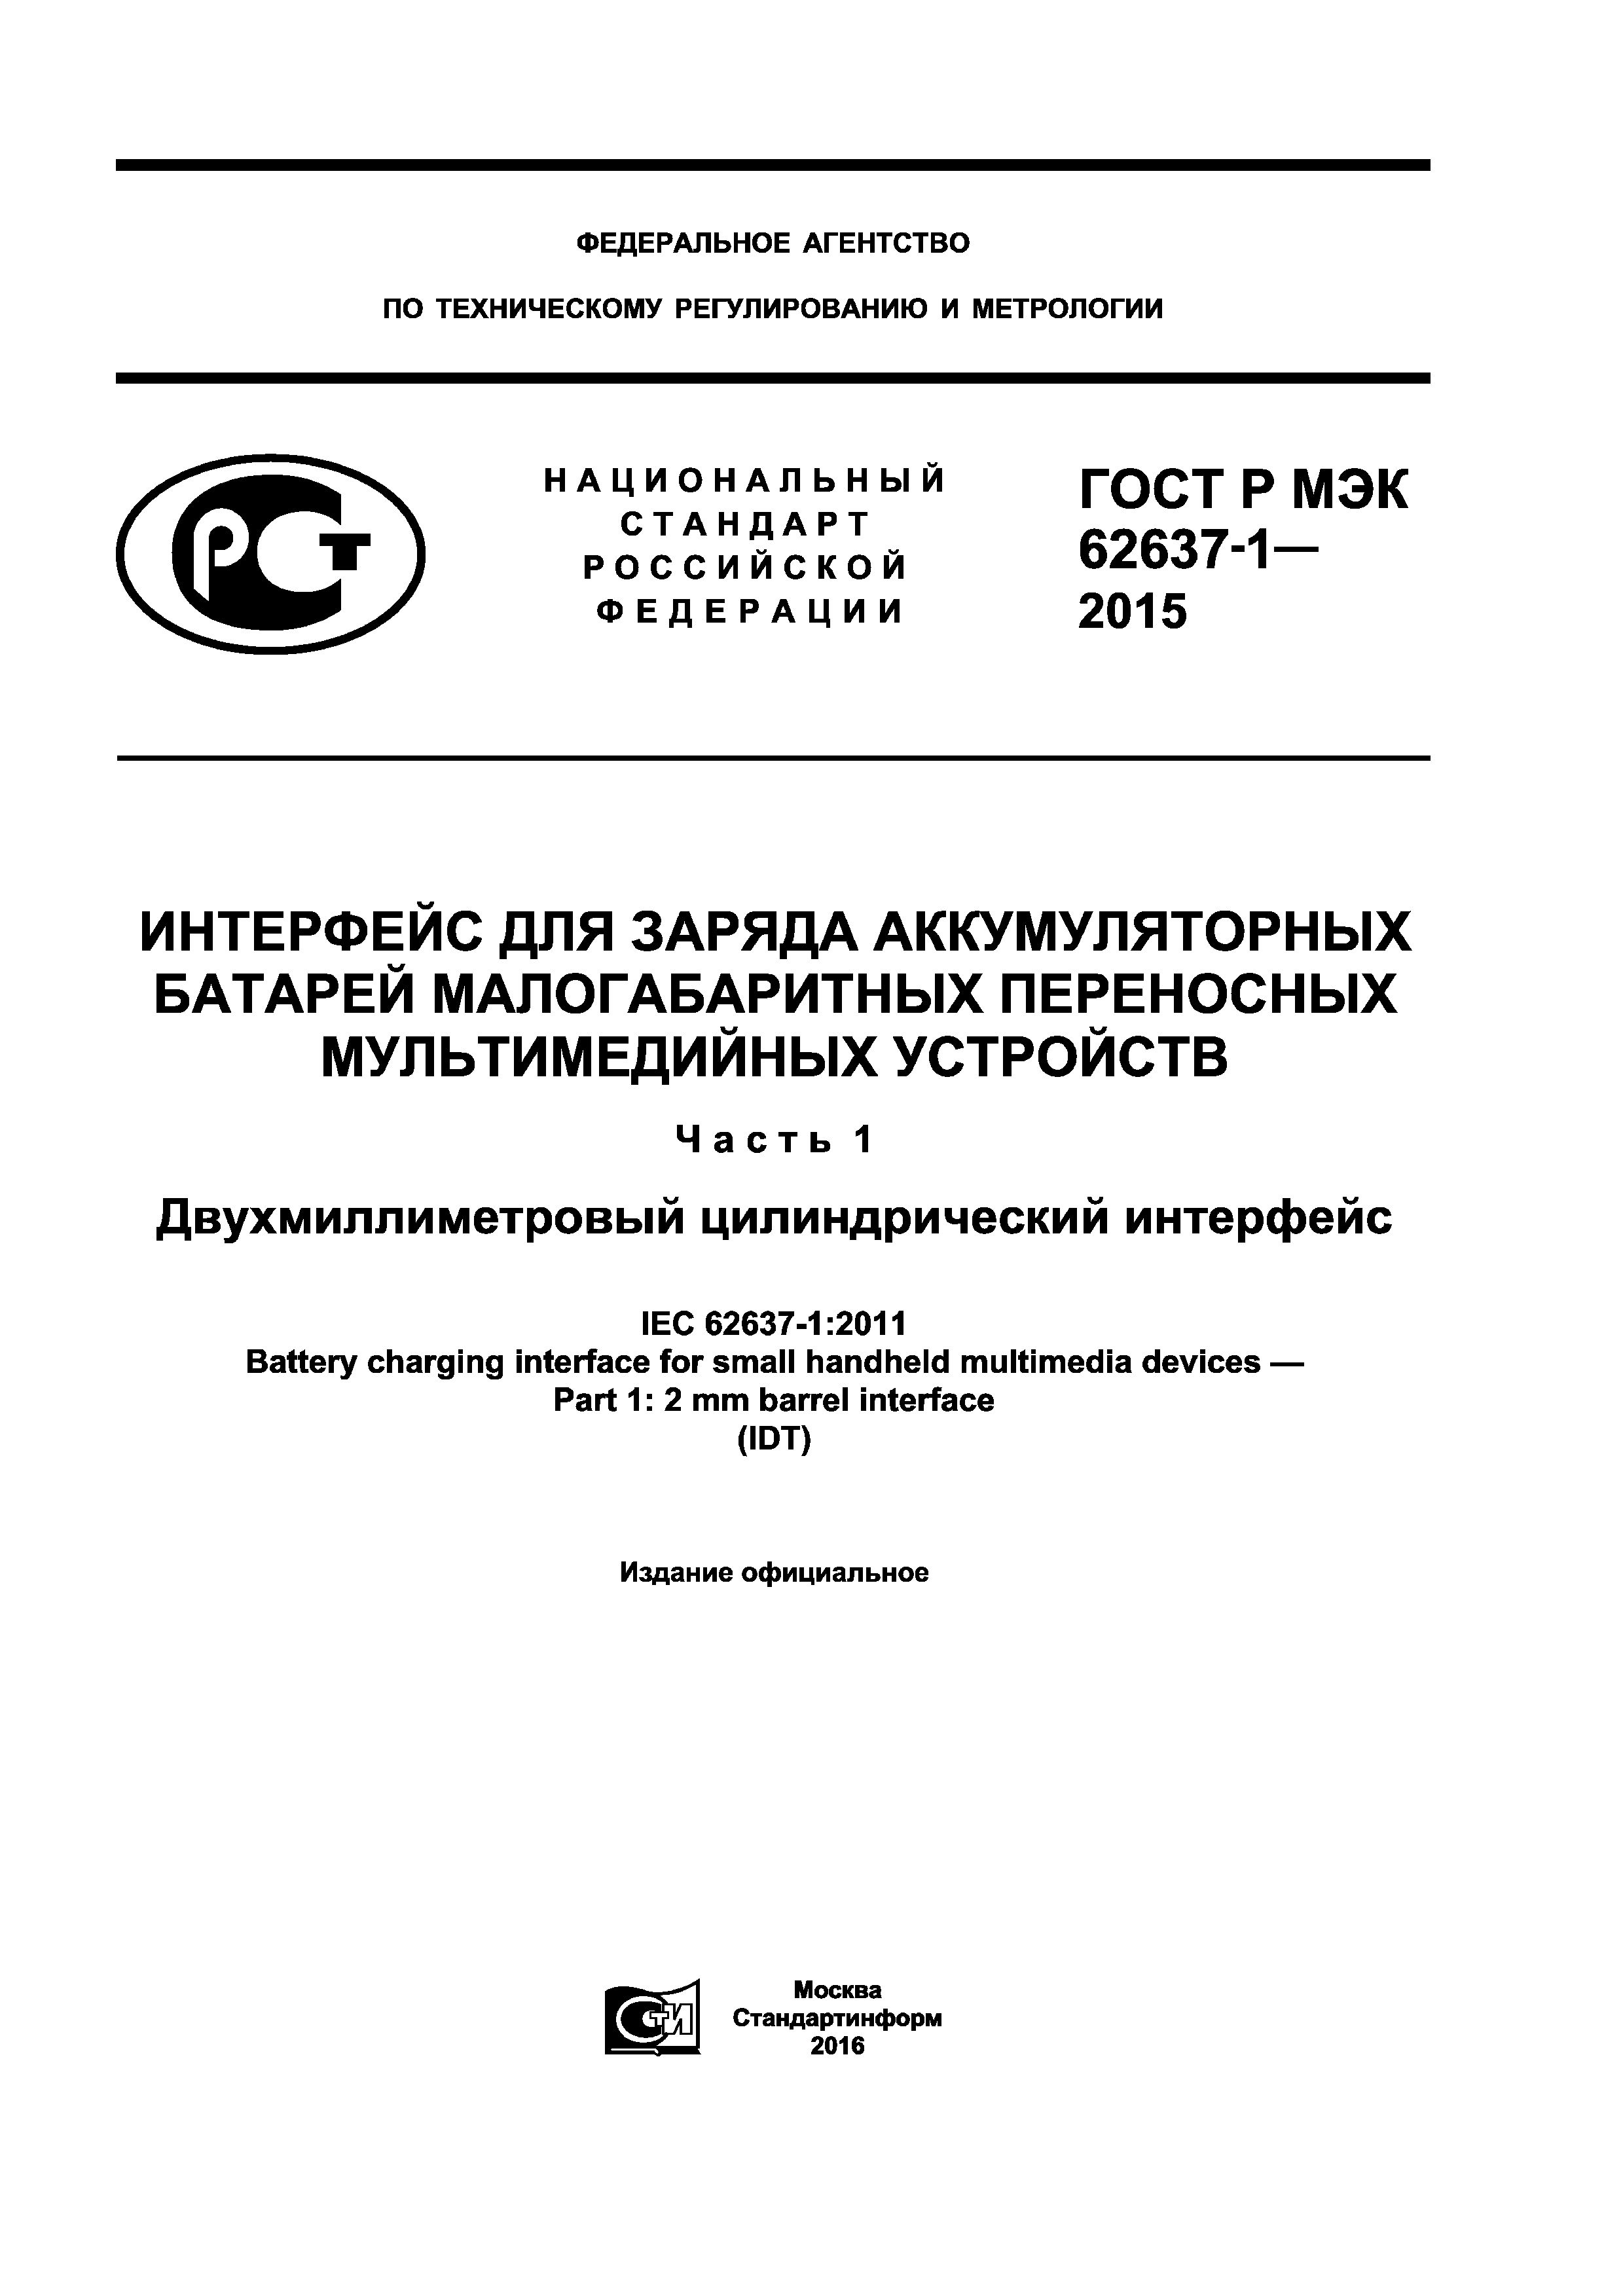 ГОСТ Р МЭК 62637-1-2015